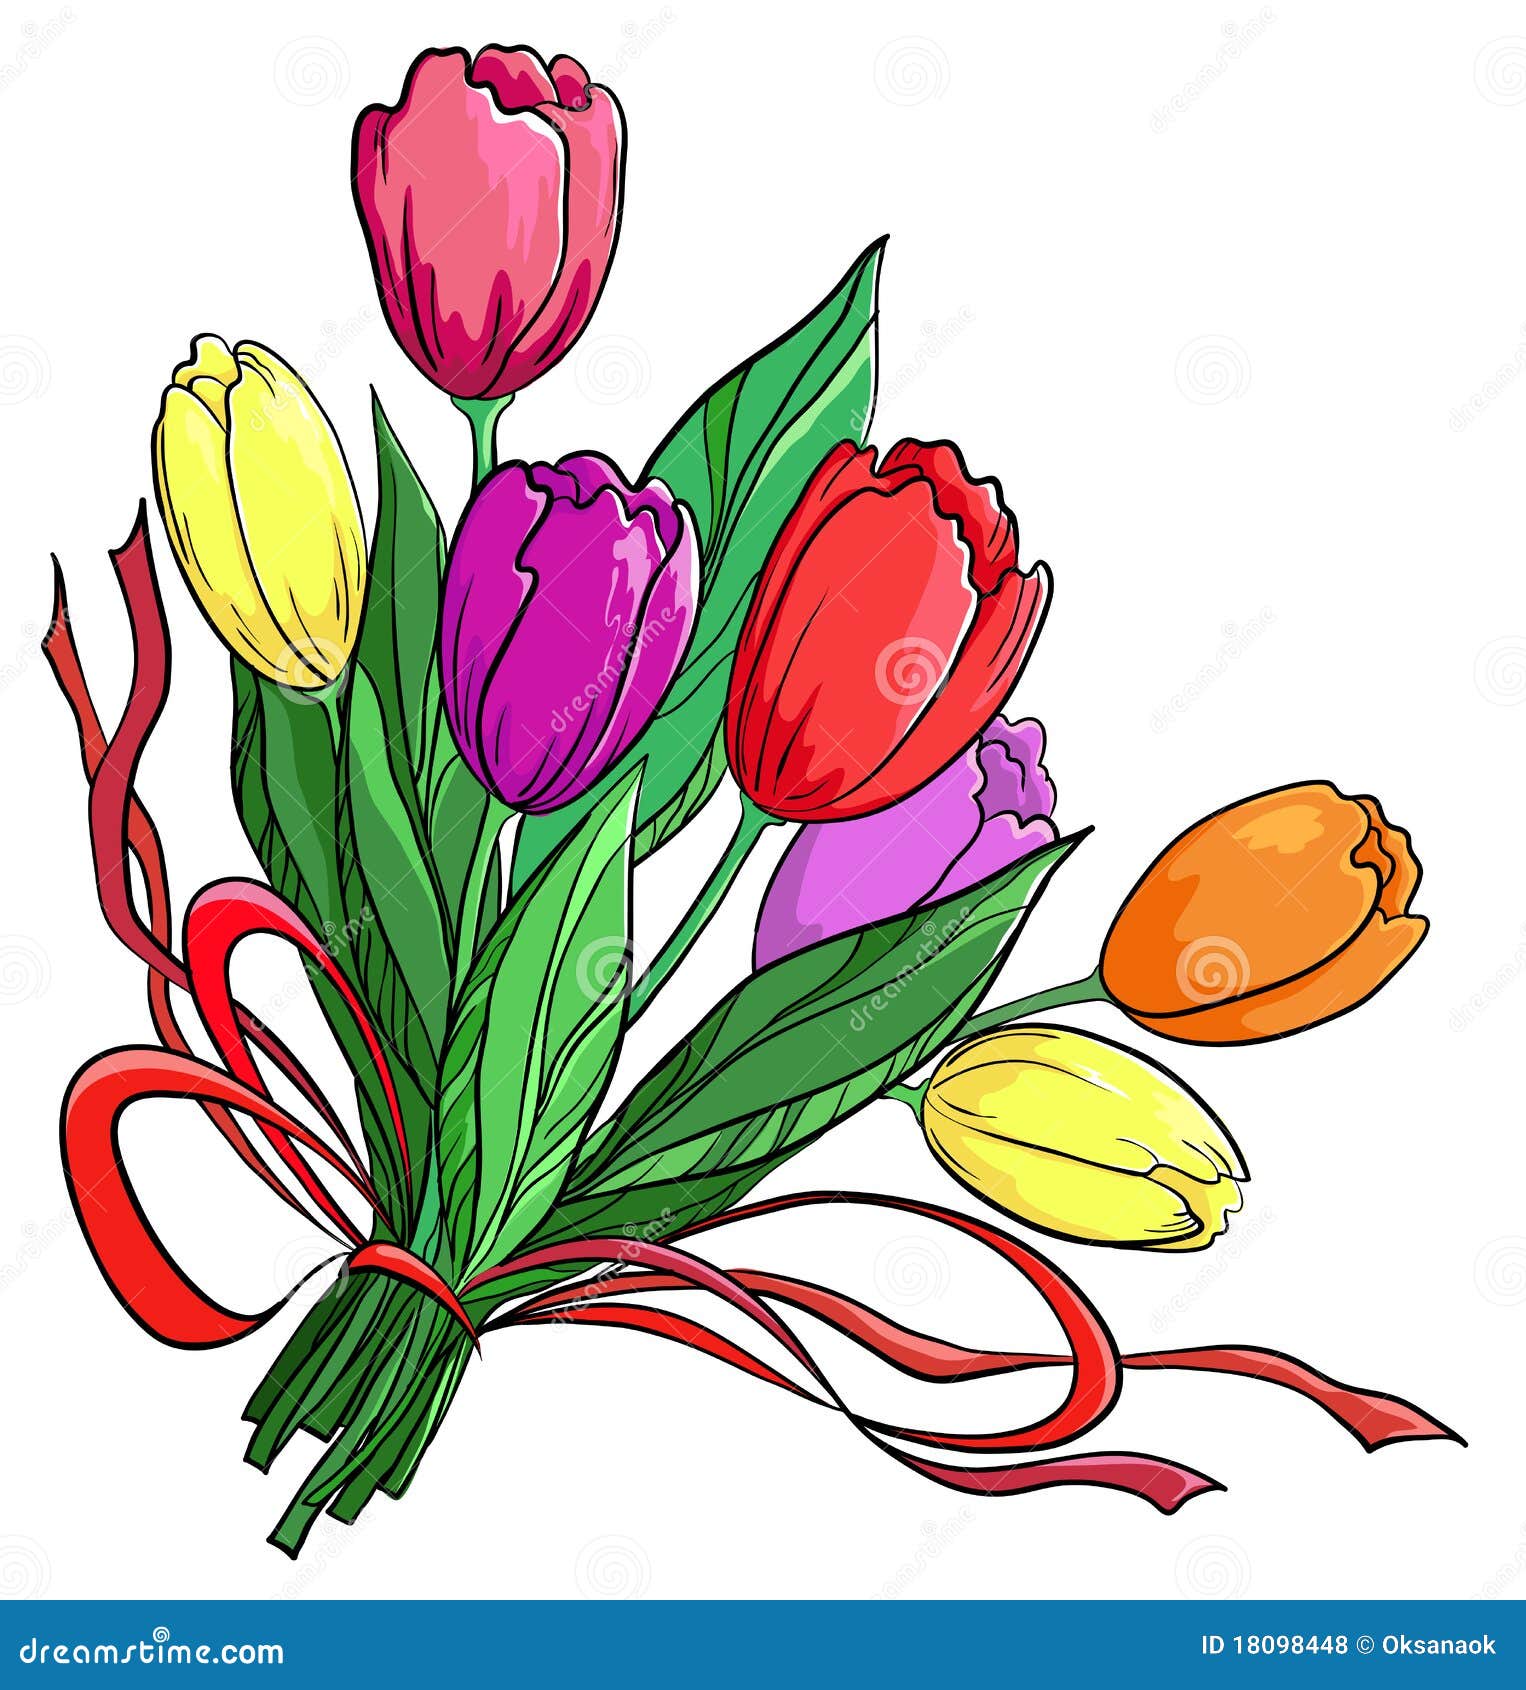 Disegno Mazzo Di Fiori.Flower Tulips Bouquet Stock Vector Illustration Of Background